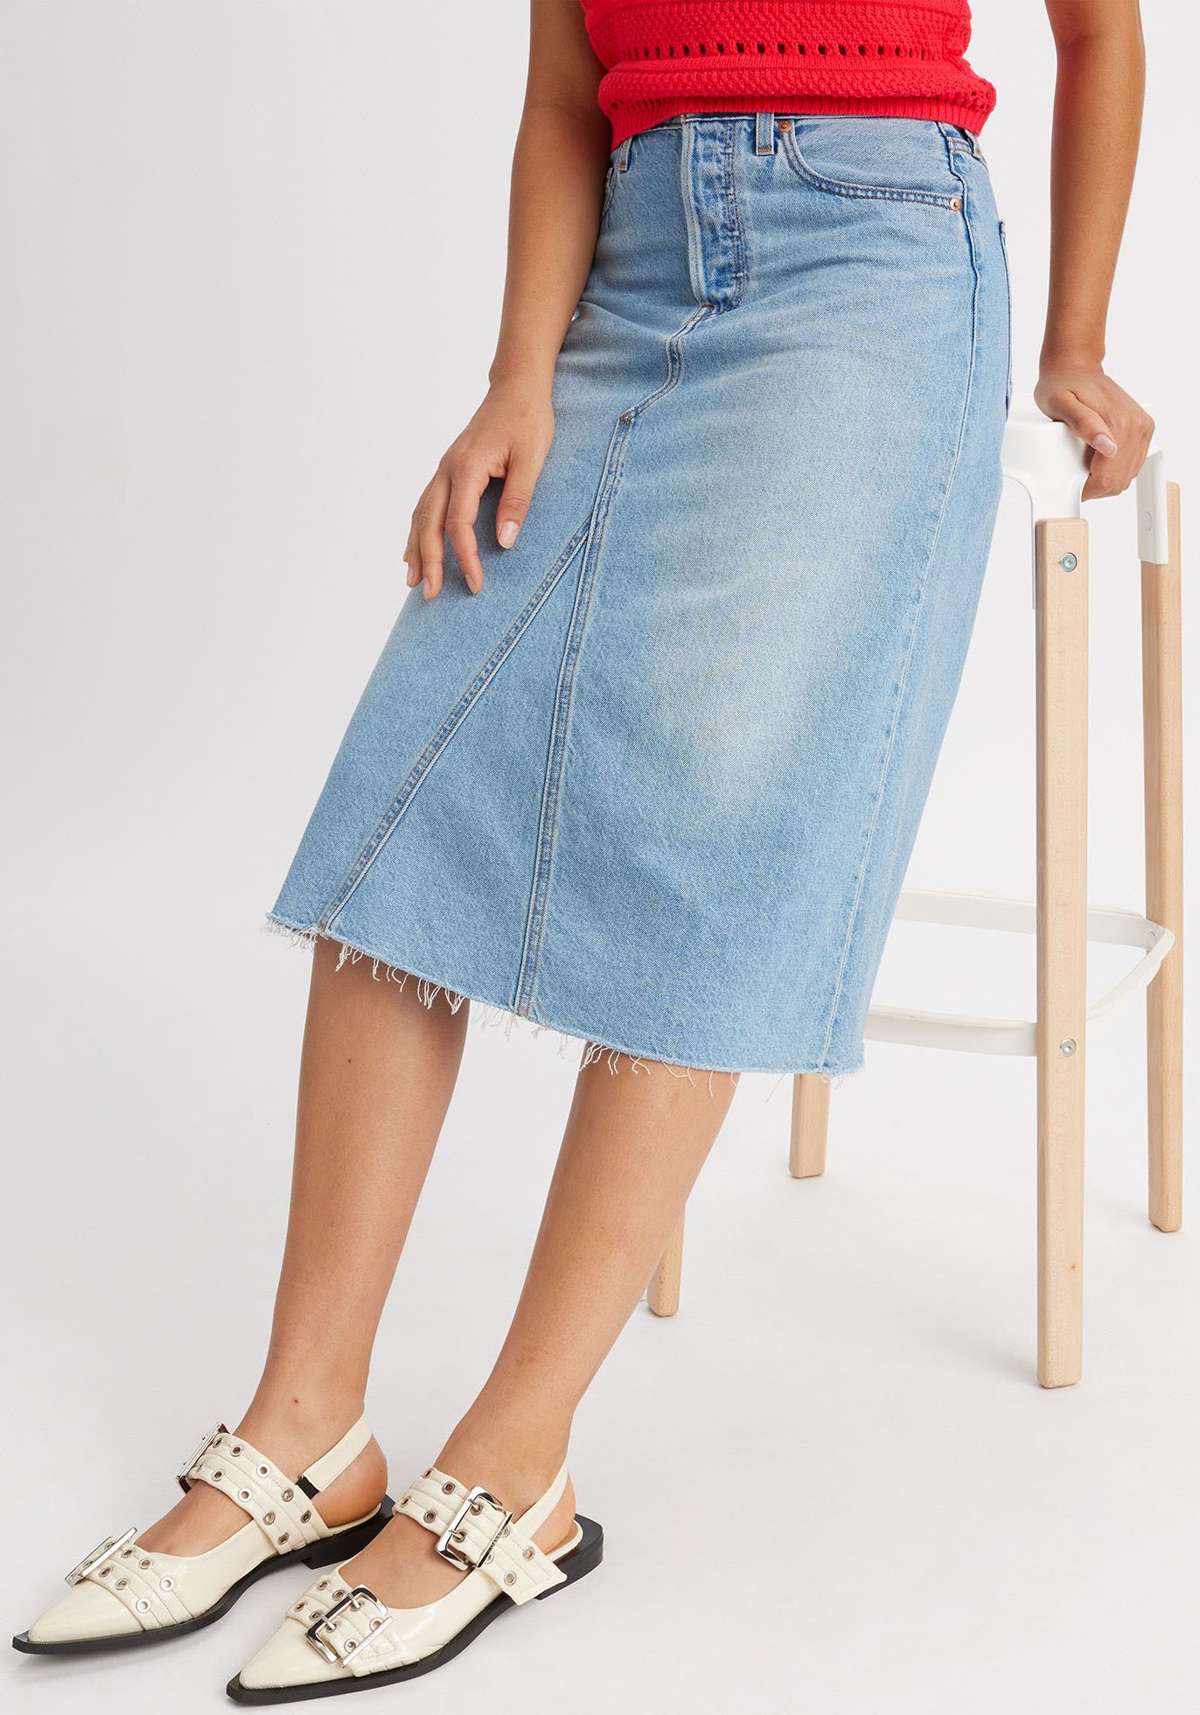 Джинсовая юбка модной длины миди с потертыми краями.